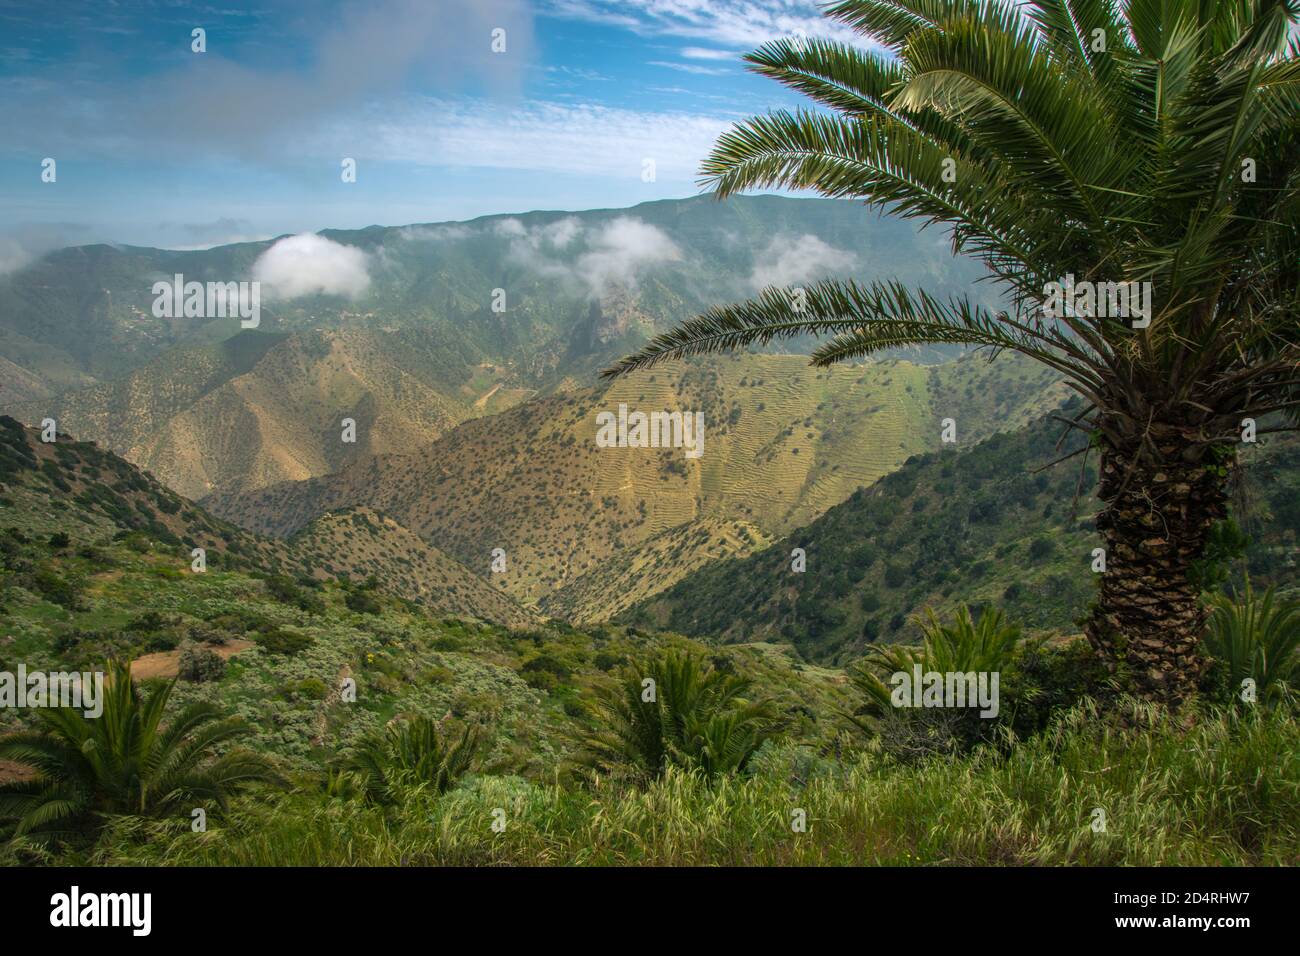 Panorama-Berglandschaft auf La Gomera, Spanien. Einsame Berglandschaft mit Palmen im Vordergrund. Dschungelartige Landschaft auf der kanarischen isla Stockfoto